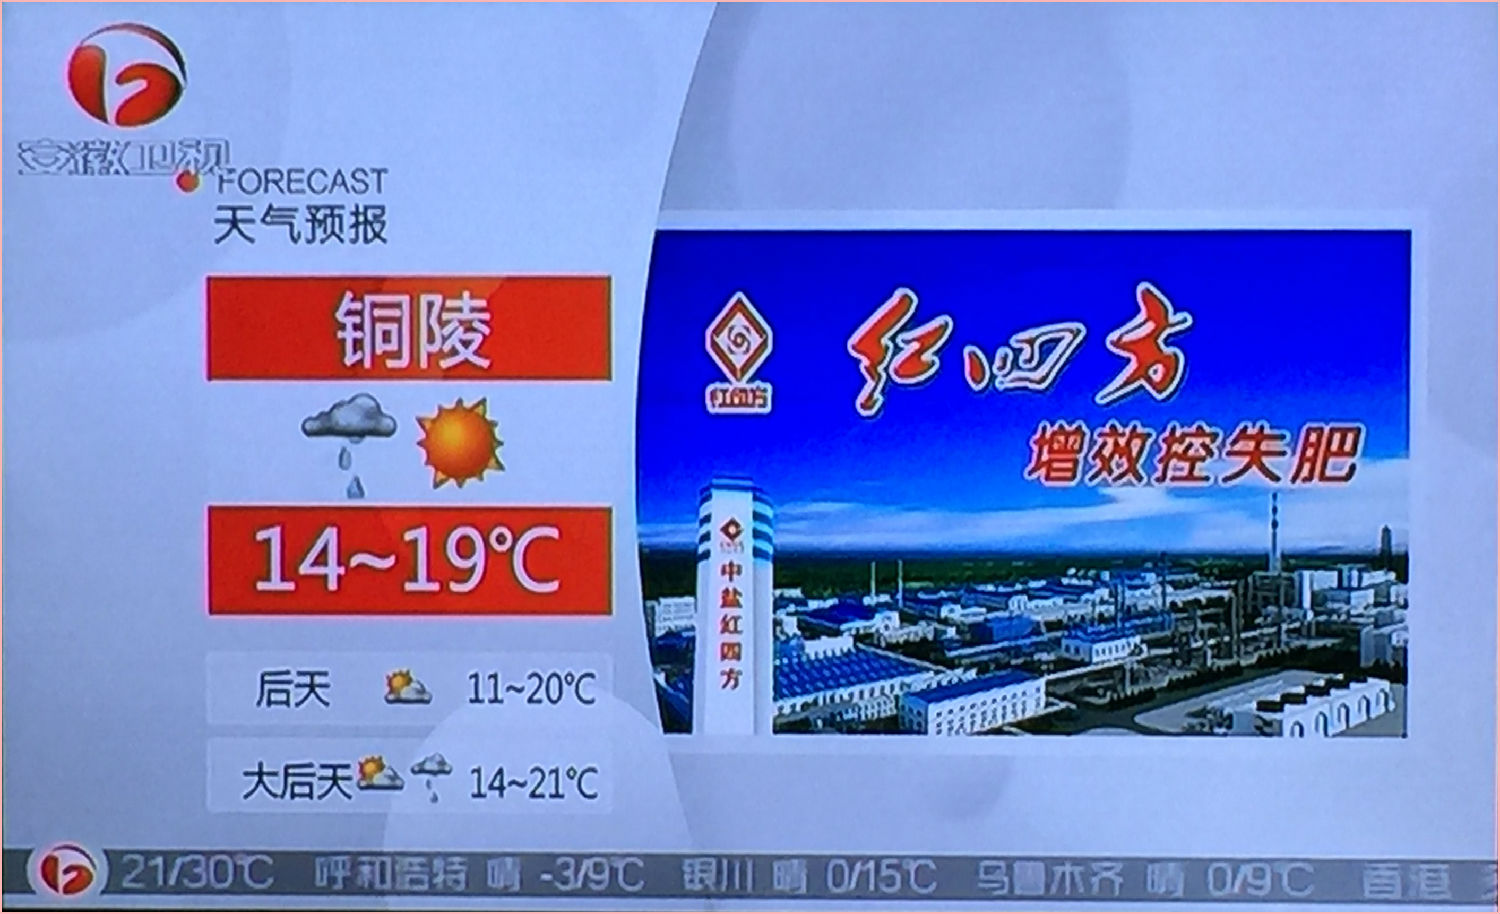 红四方品牌在安徽台天气预报广告